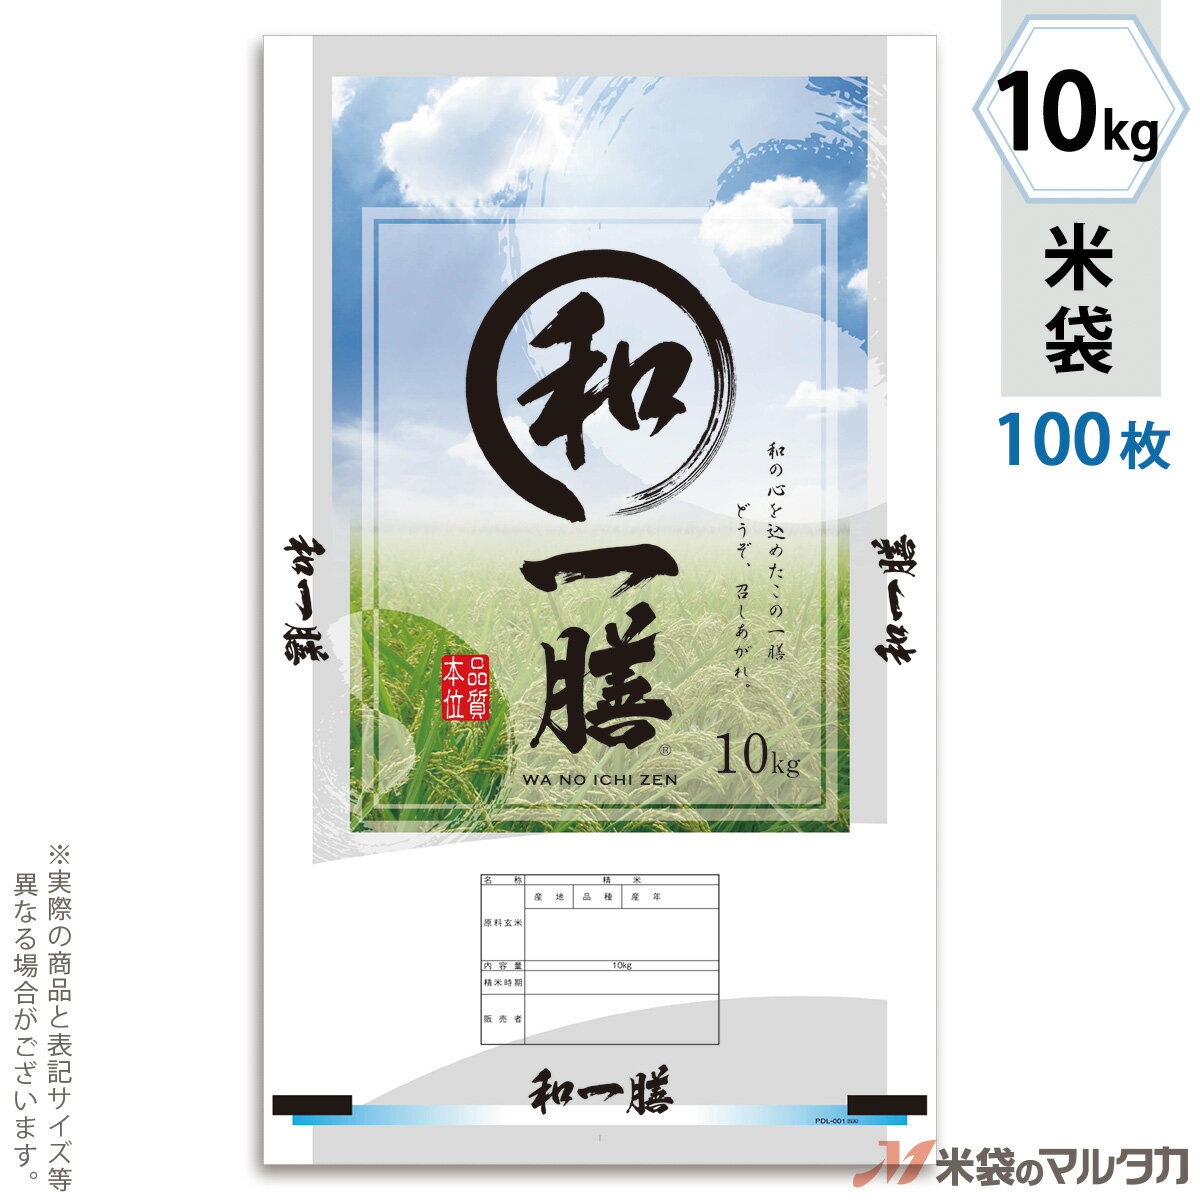 米袋 ポリ マイクロドット 和の一膳 10kg 100枚セット PD-0052 1